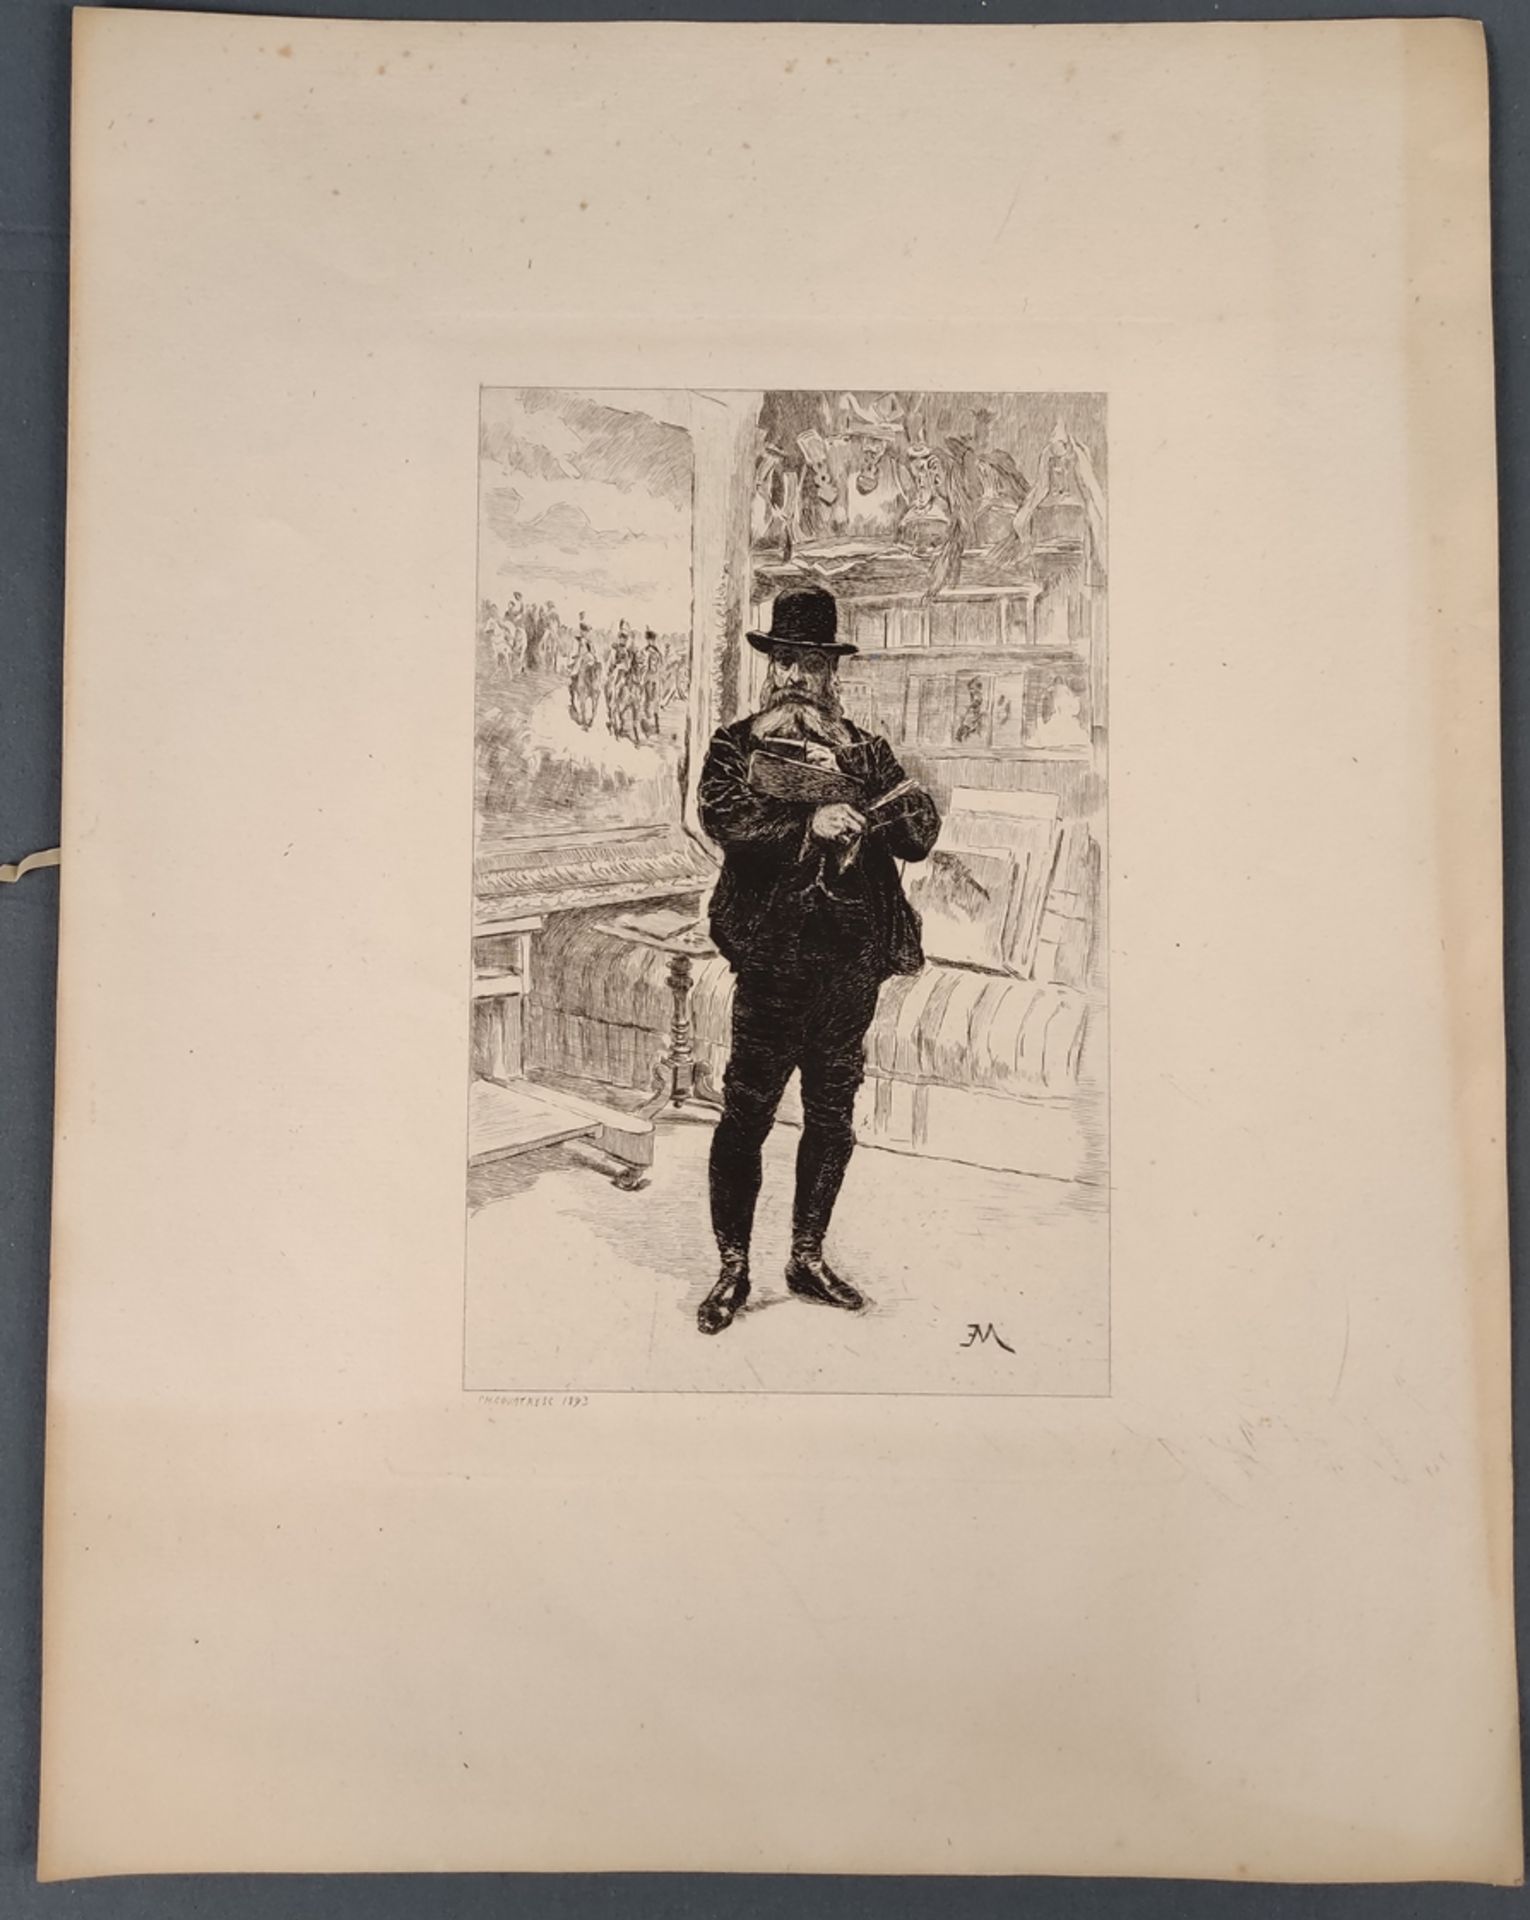 Courtry, Charles (1846 - 1897) "Ernest Meissonier dans son atelier", in Zimmer stehend, nach Selbst - Bild 2 aus 3